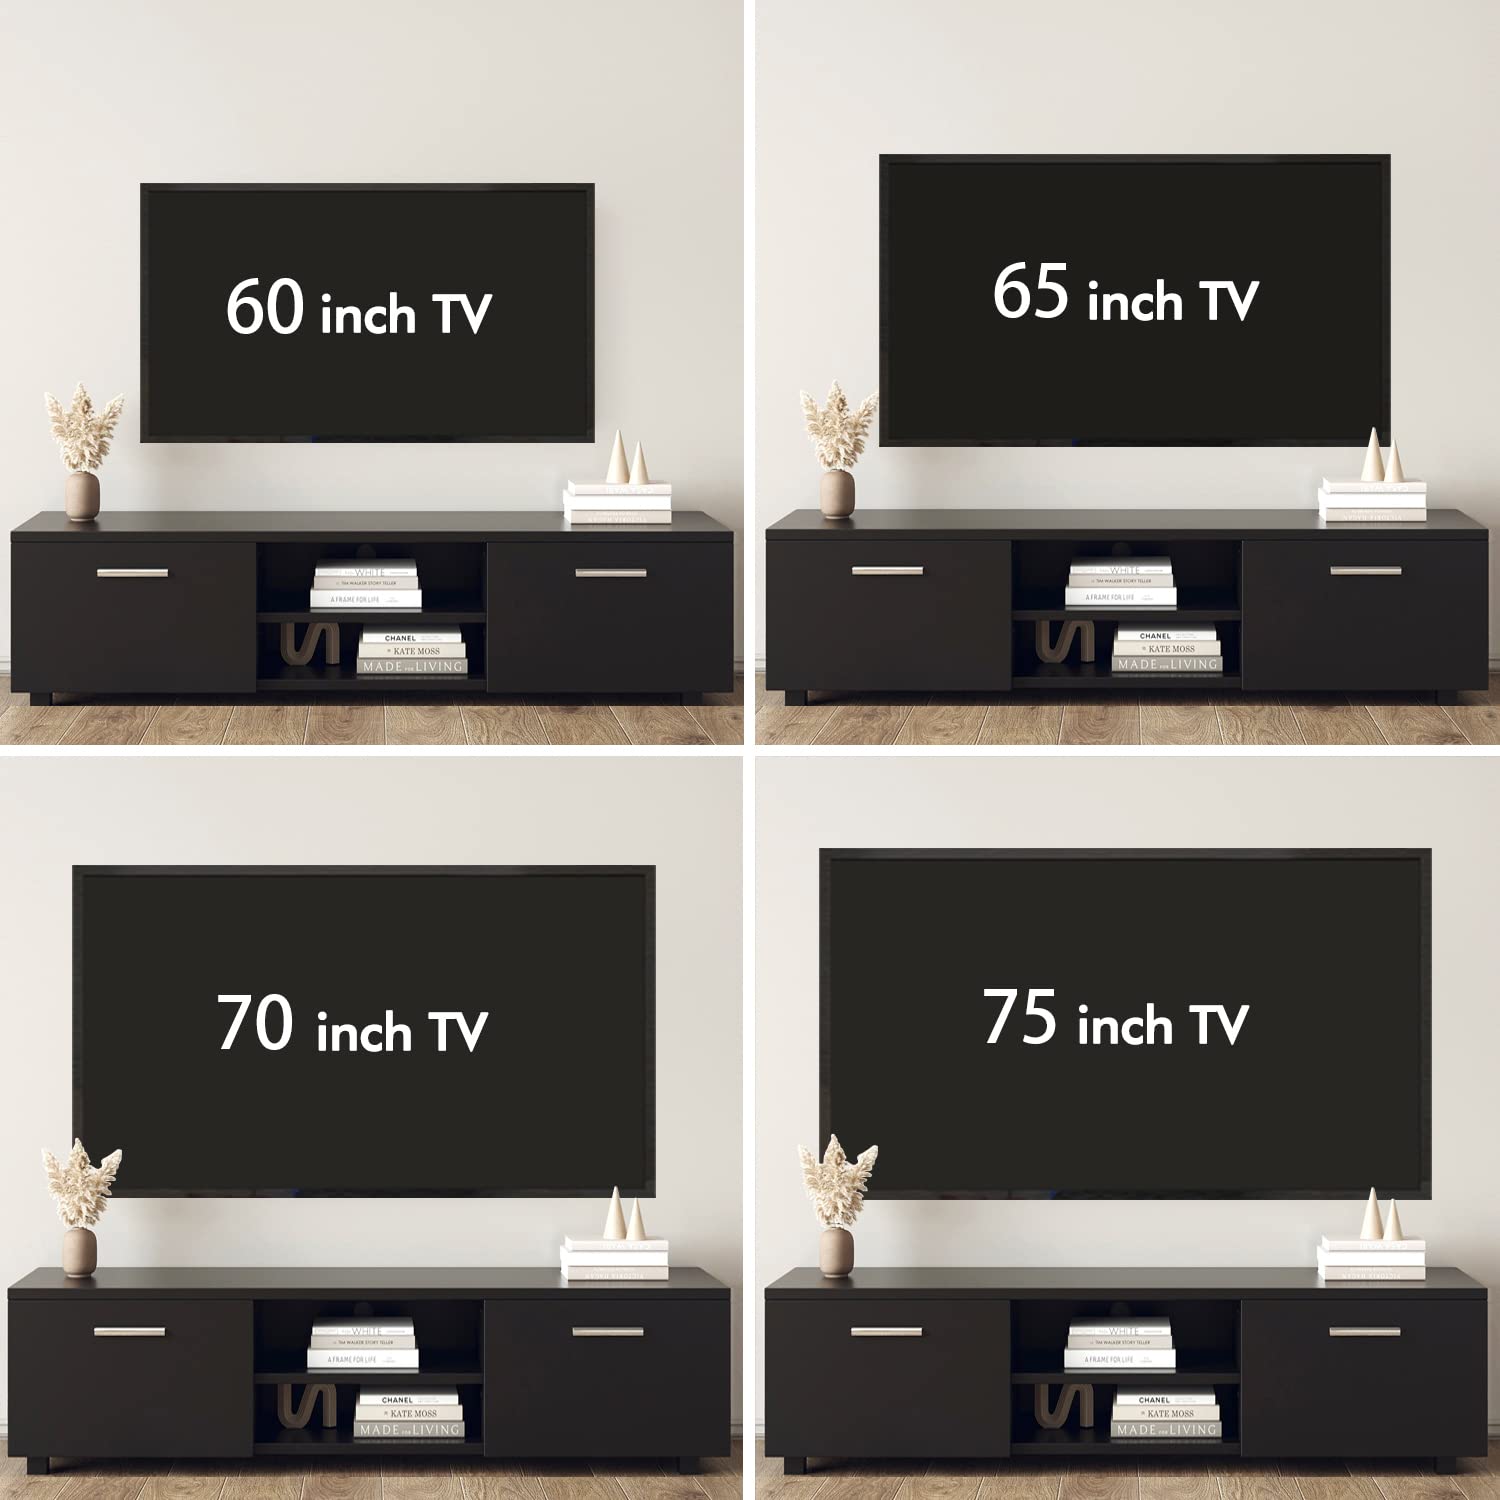 75 inch tv vs 65